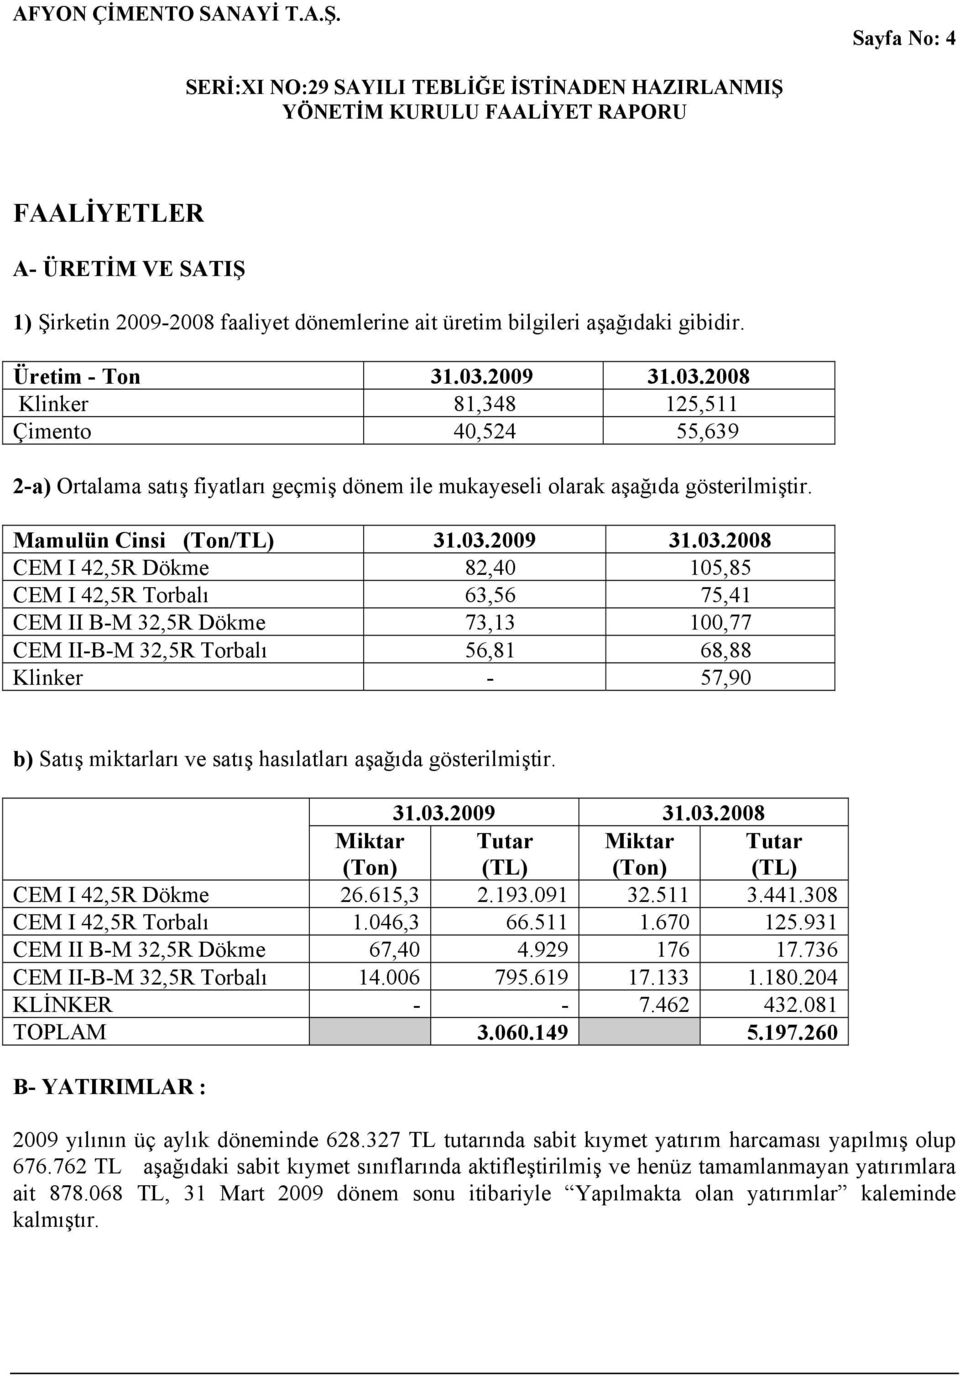 2008 Klinker 81,348 125,511 Çimento 40,524 55,639 2-a) Ortalama satış fiyatları geçmiş dönem ile mukayeseli olarak aşağıda gösterilmiştir. Mamulün Cinsi (Ton/TL) 31.03.